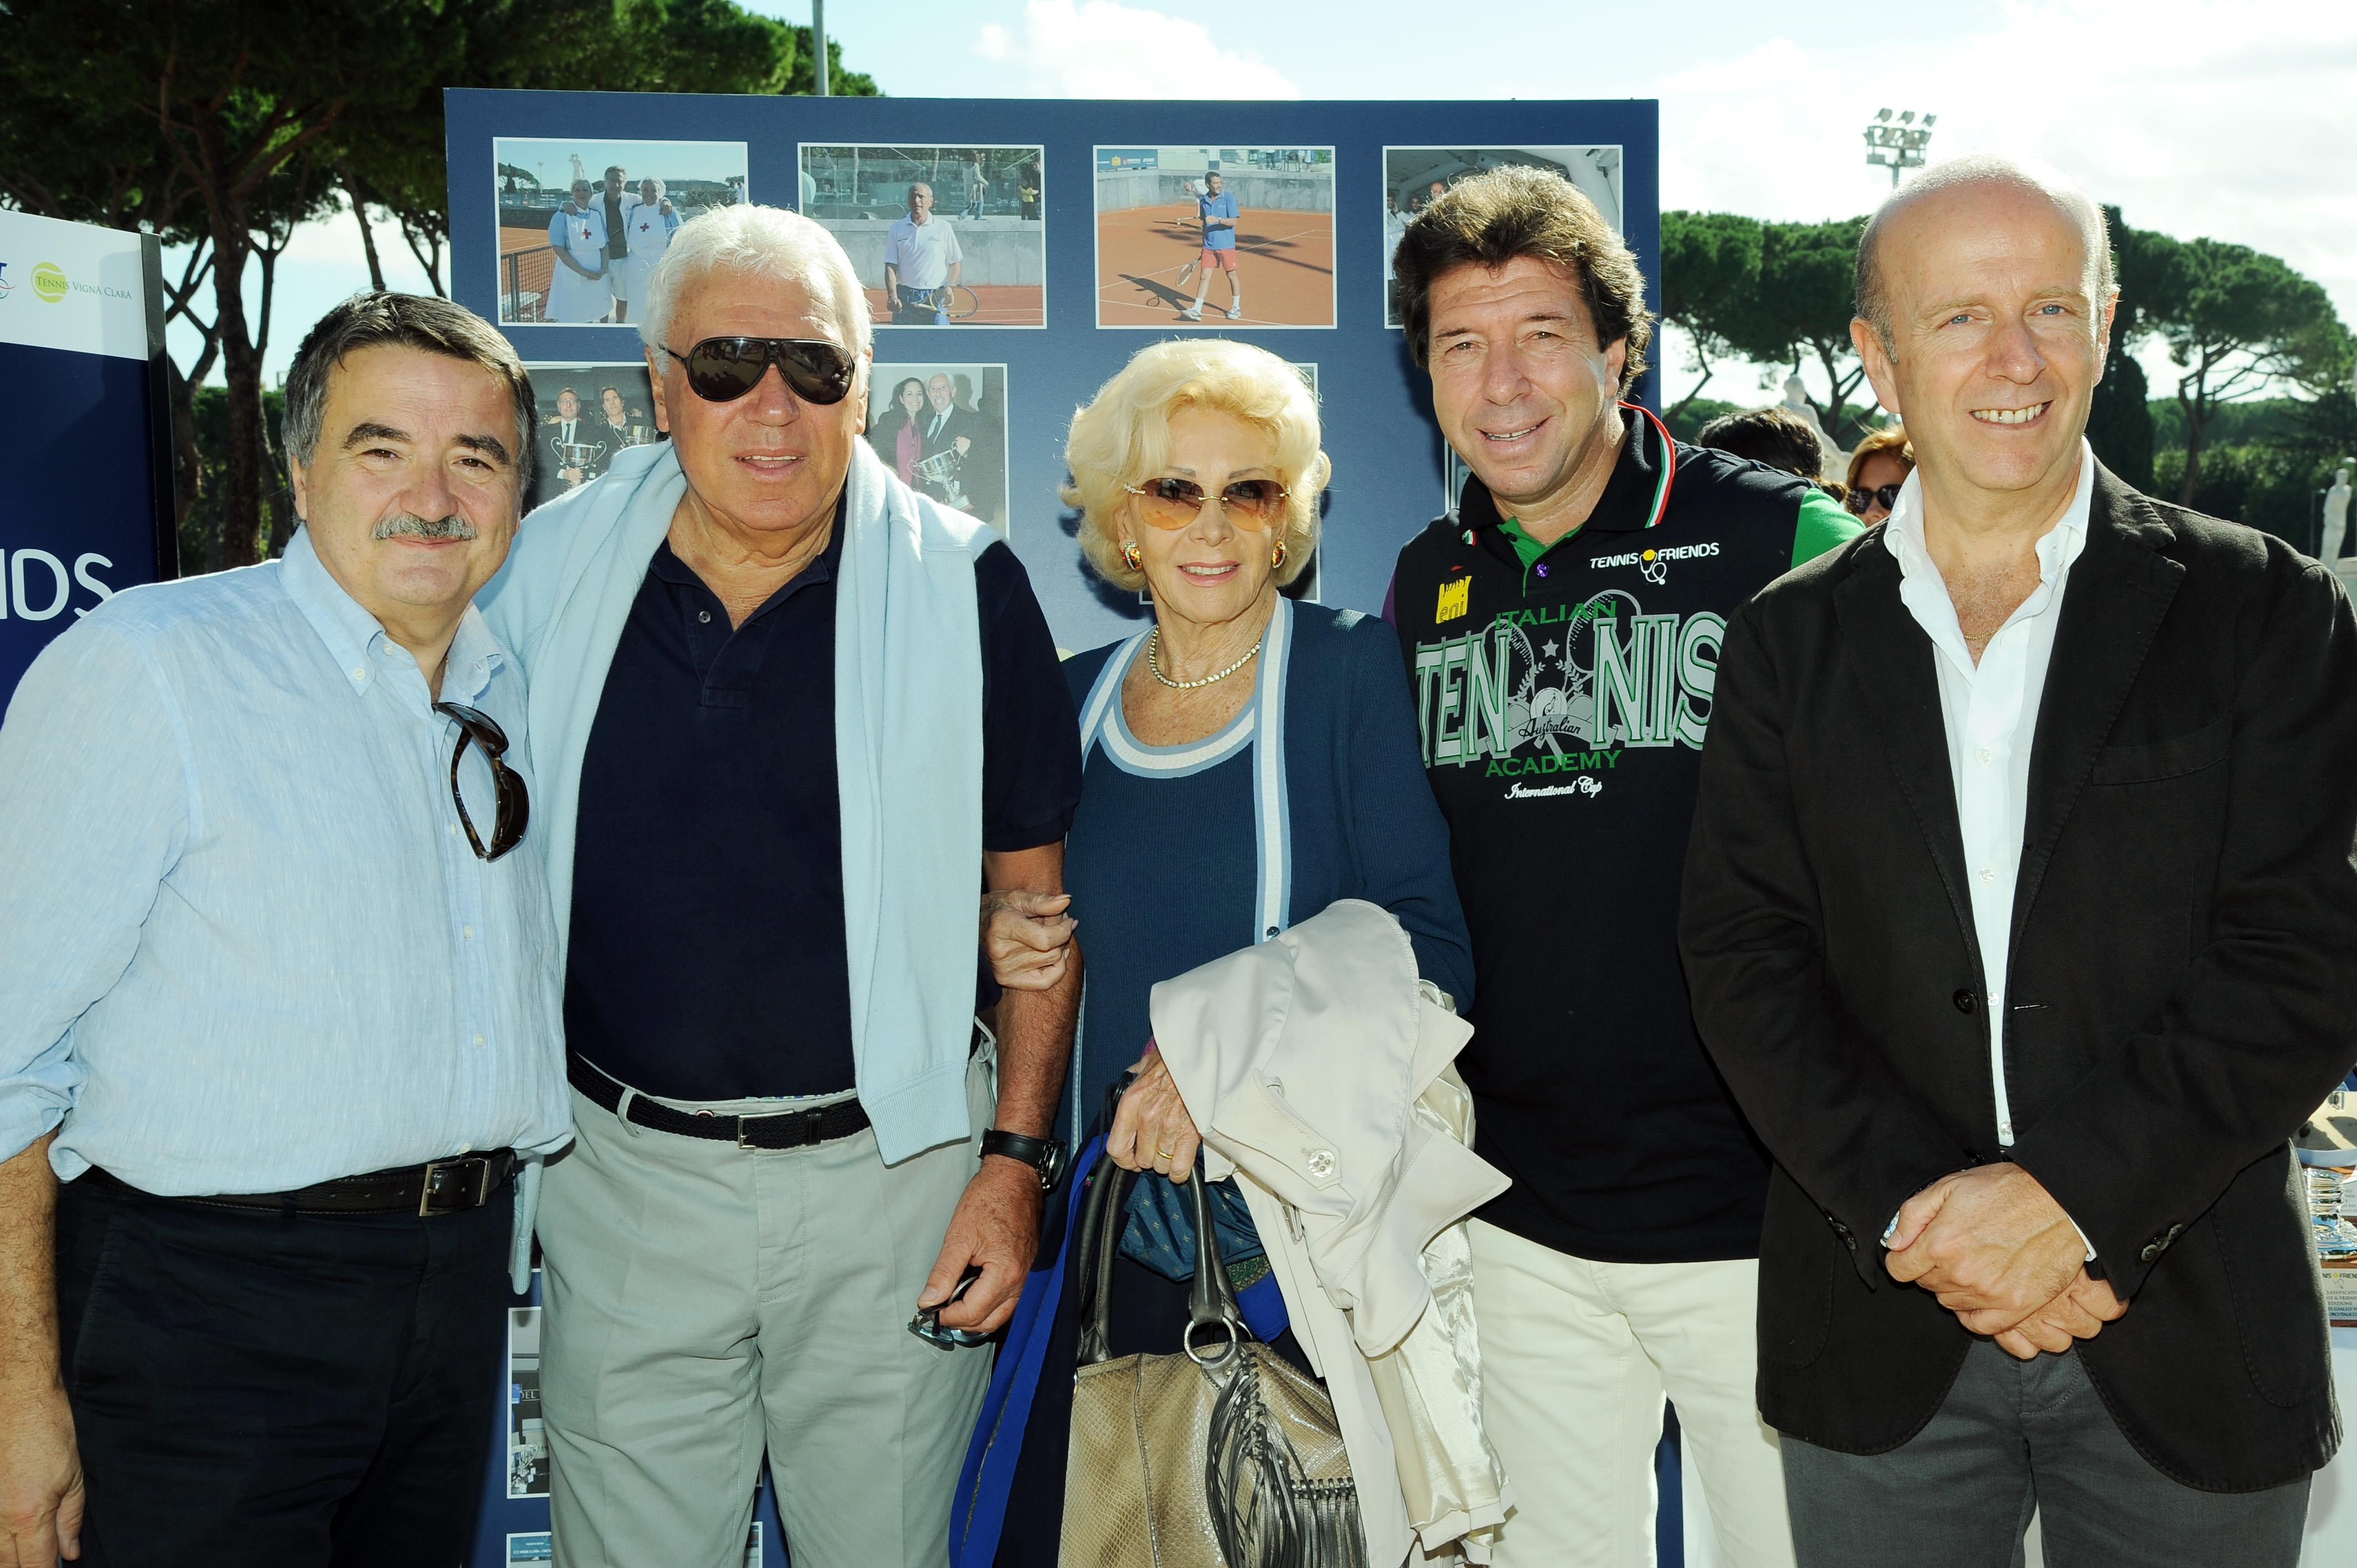 Da sinistra, il prof. Rocco Bellantone, Nicola Pietrangeli, Lea Pericoli, Giorgio Meneschincheri, il prof. Alfredo Pontecorvi